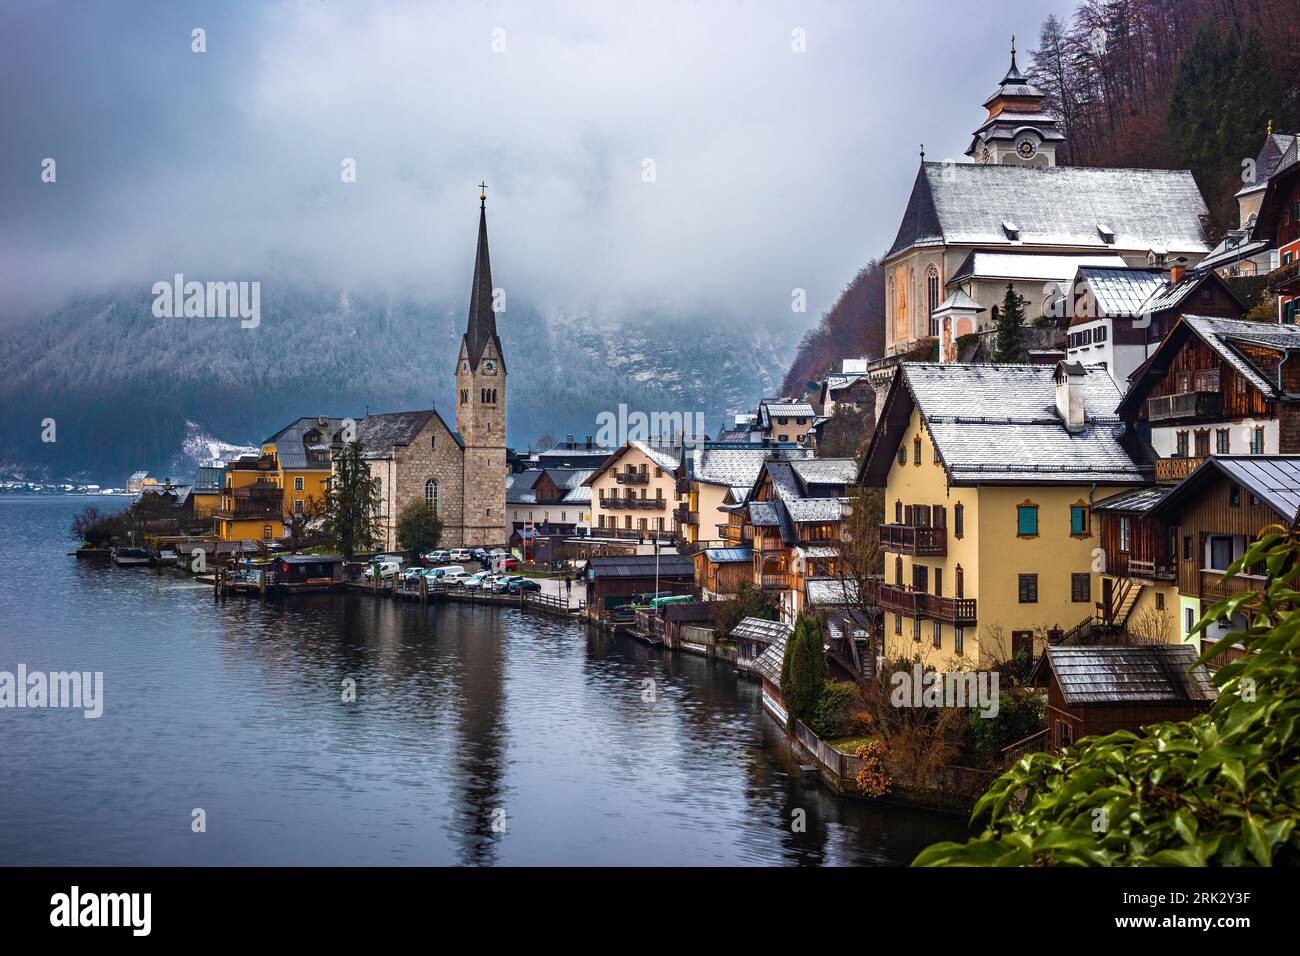 Hallstatt, Österreich - Klassischer Blick auf den weltberühmten Hallstatt, die zum UNESCO-Weltkulturerbe gehörende Stadt am See mit der Lutherischen Hallstatt-Kirche an einem kalten nebeligen Tag Stockfoto